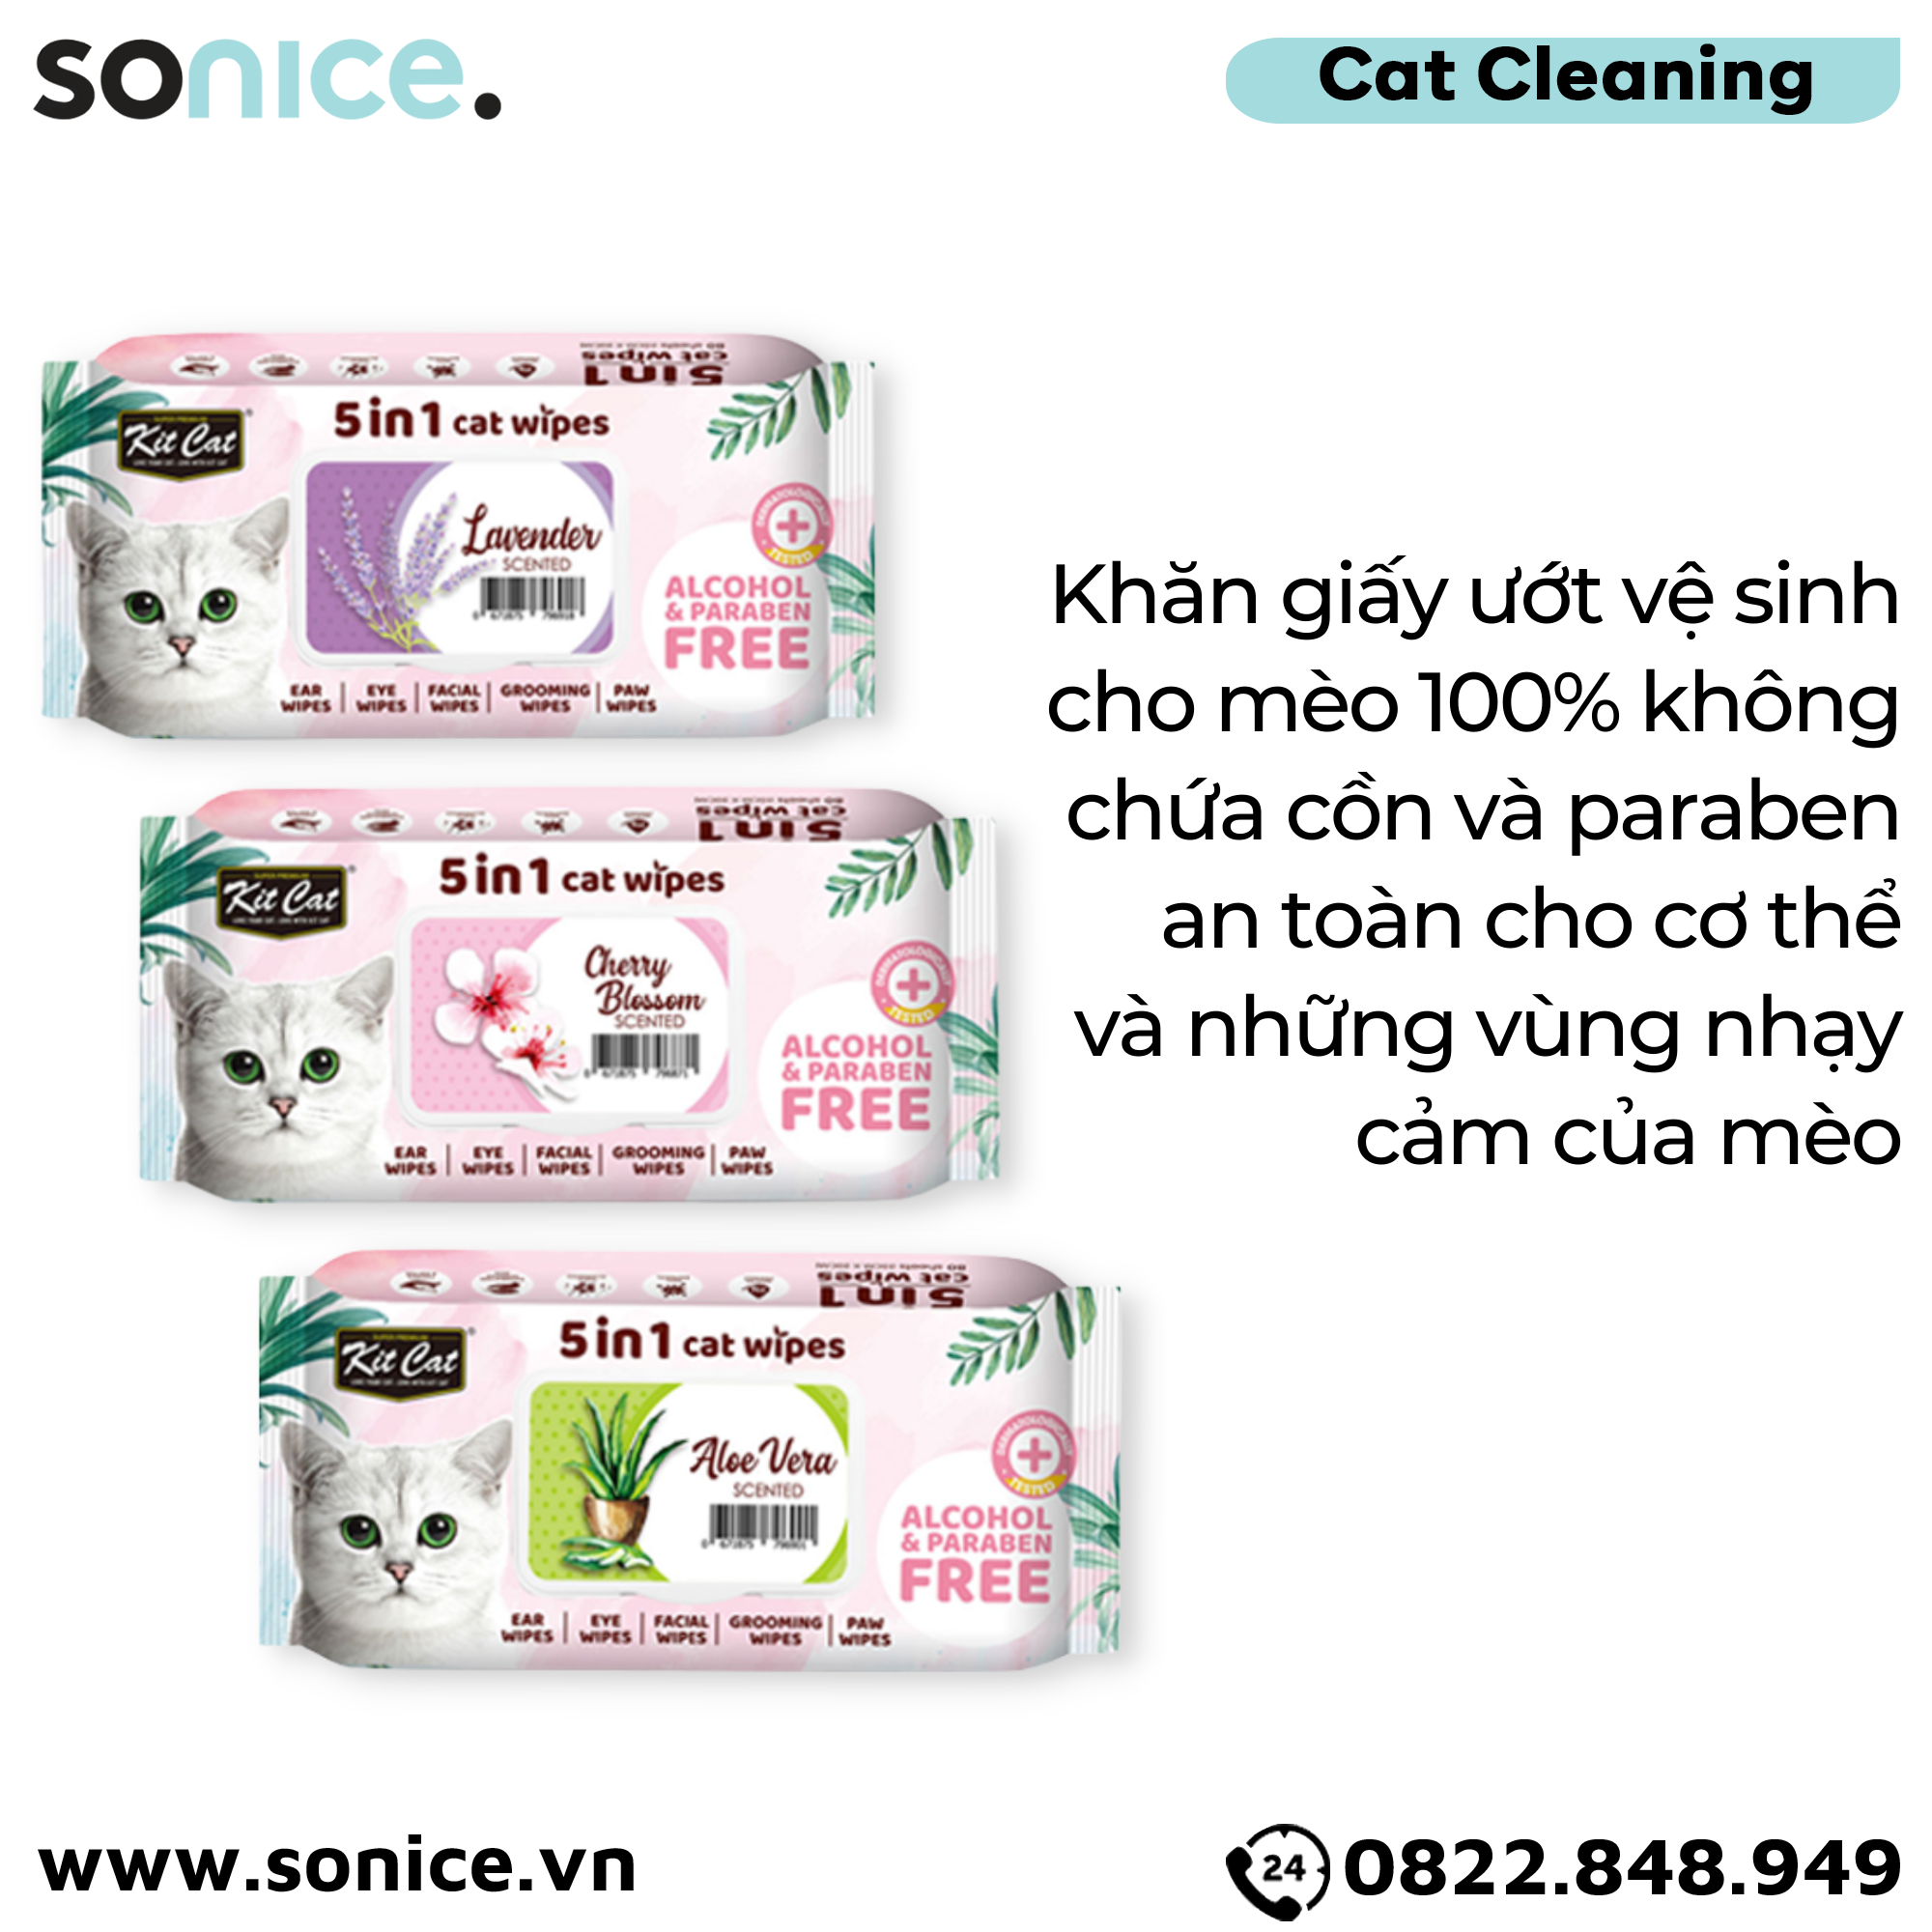  Khăn giấy ướt vệ sinh Kit Cat 5in1 Cat Wipes - Vệ sinh toàn thân cho Mèo SONICE. 